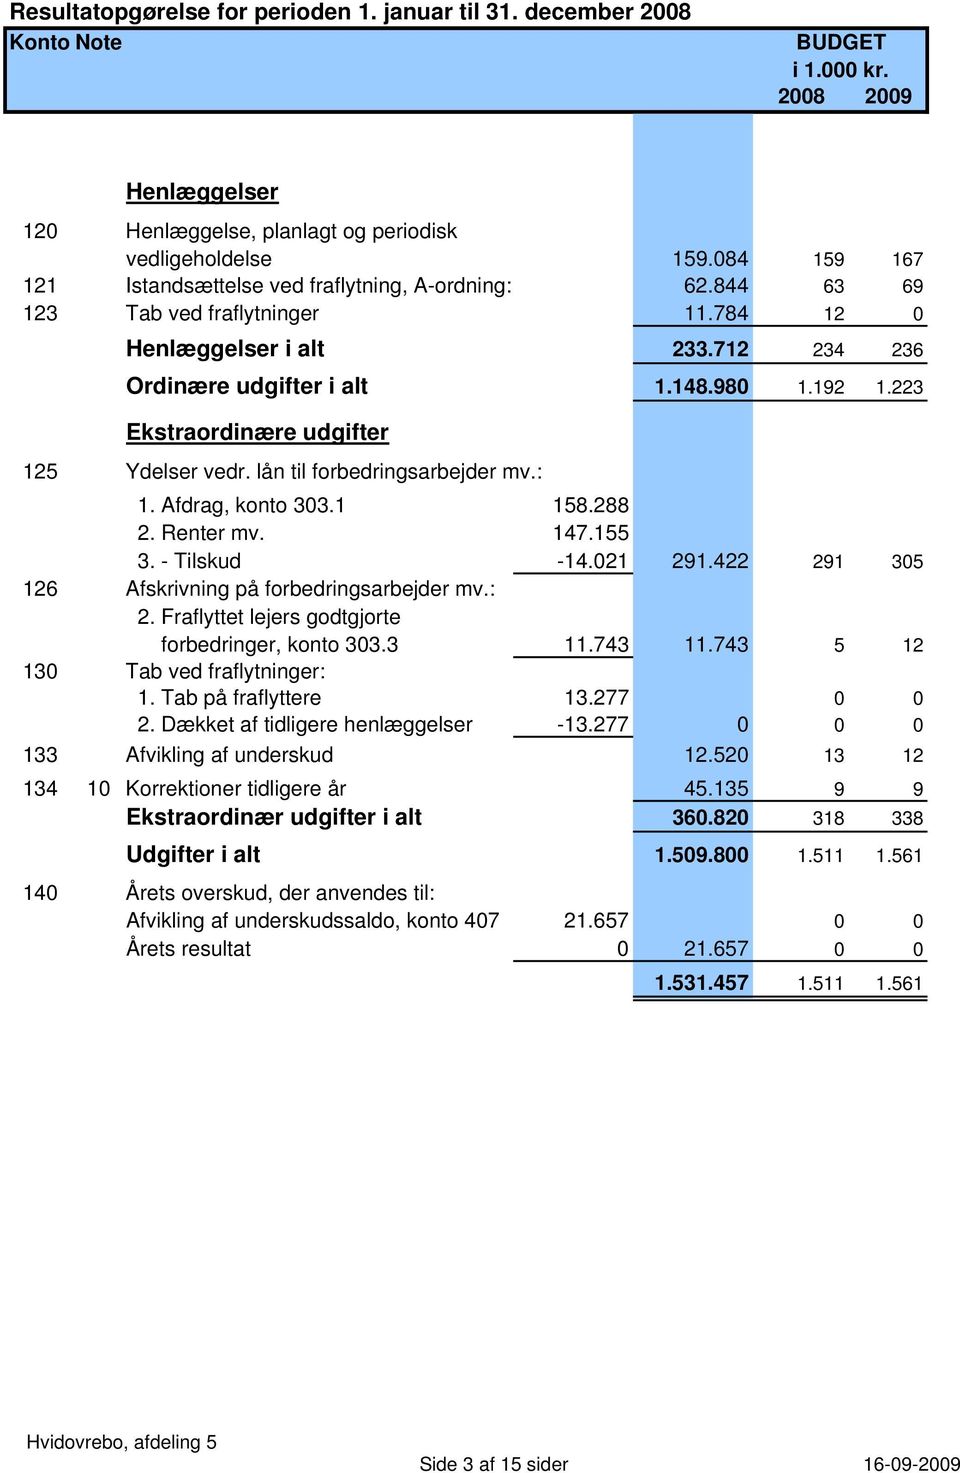 223 Ekstraordinære udgifter 125 Ydelser vedr. lån til forbedringsarbejder mv.: 1. Afdrag, konto 303.1 158.288 2. Renter mv. 147.155 3. - Tilskud -14.021 291.